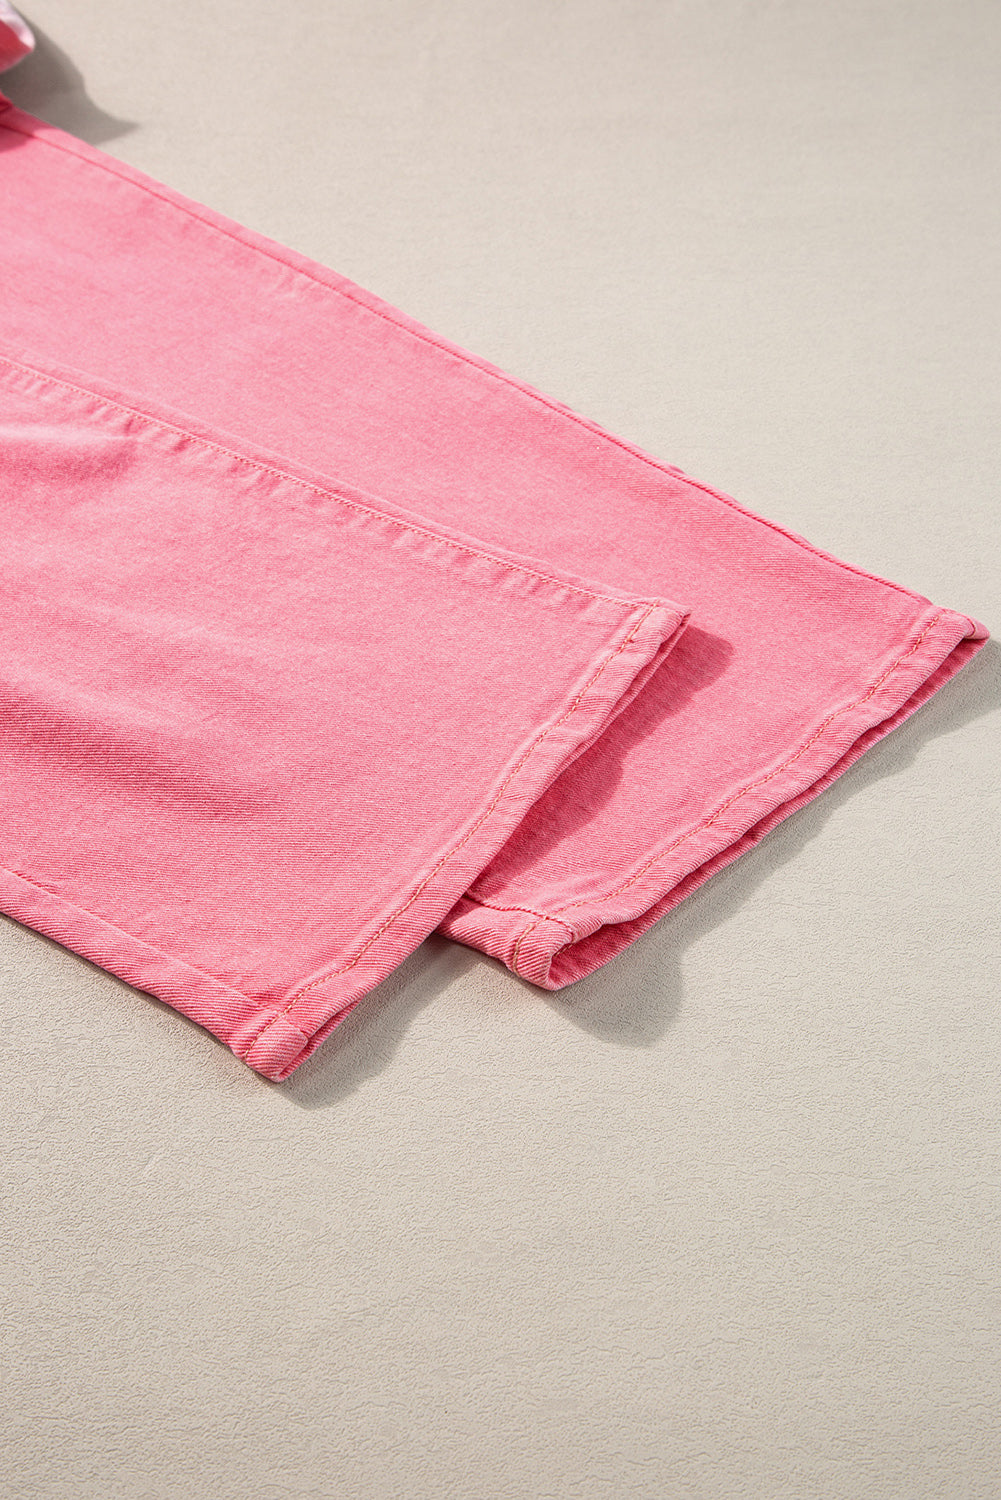 Rosafarbene Denim-Hose mit verstreuten Strasssteinen und Farbverlauf